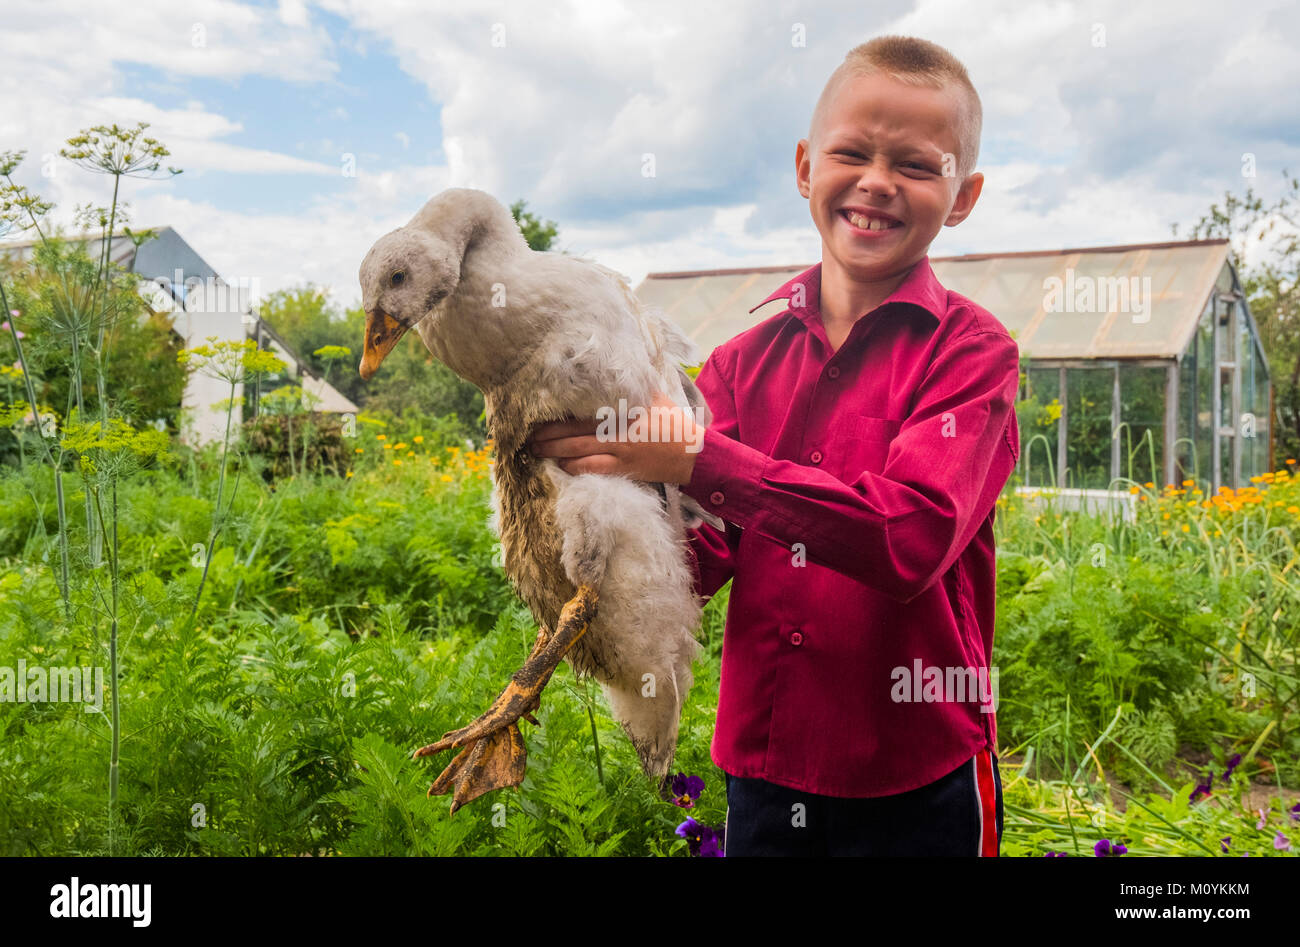 Caucasian boy holding duck on farm Banque D'Images